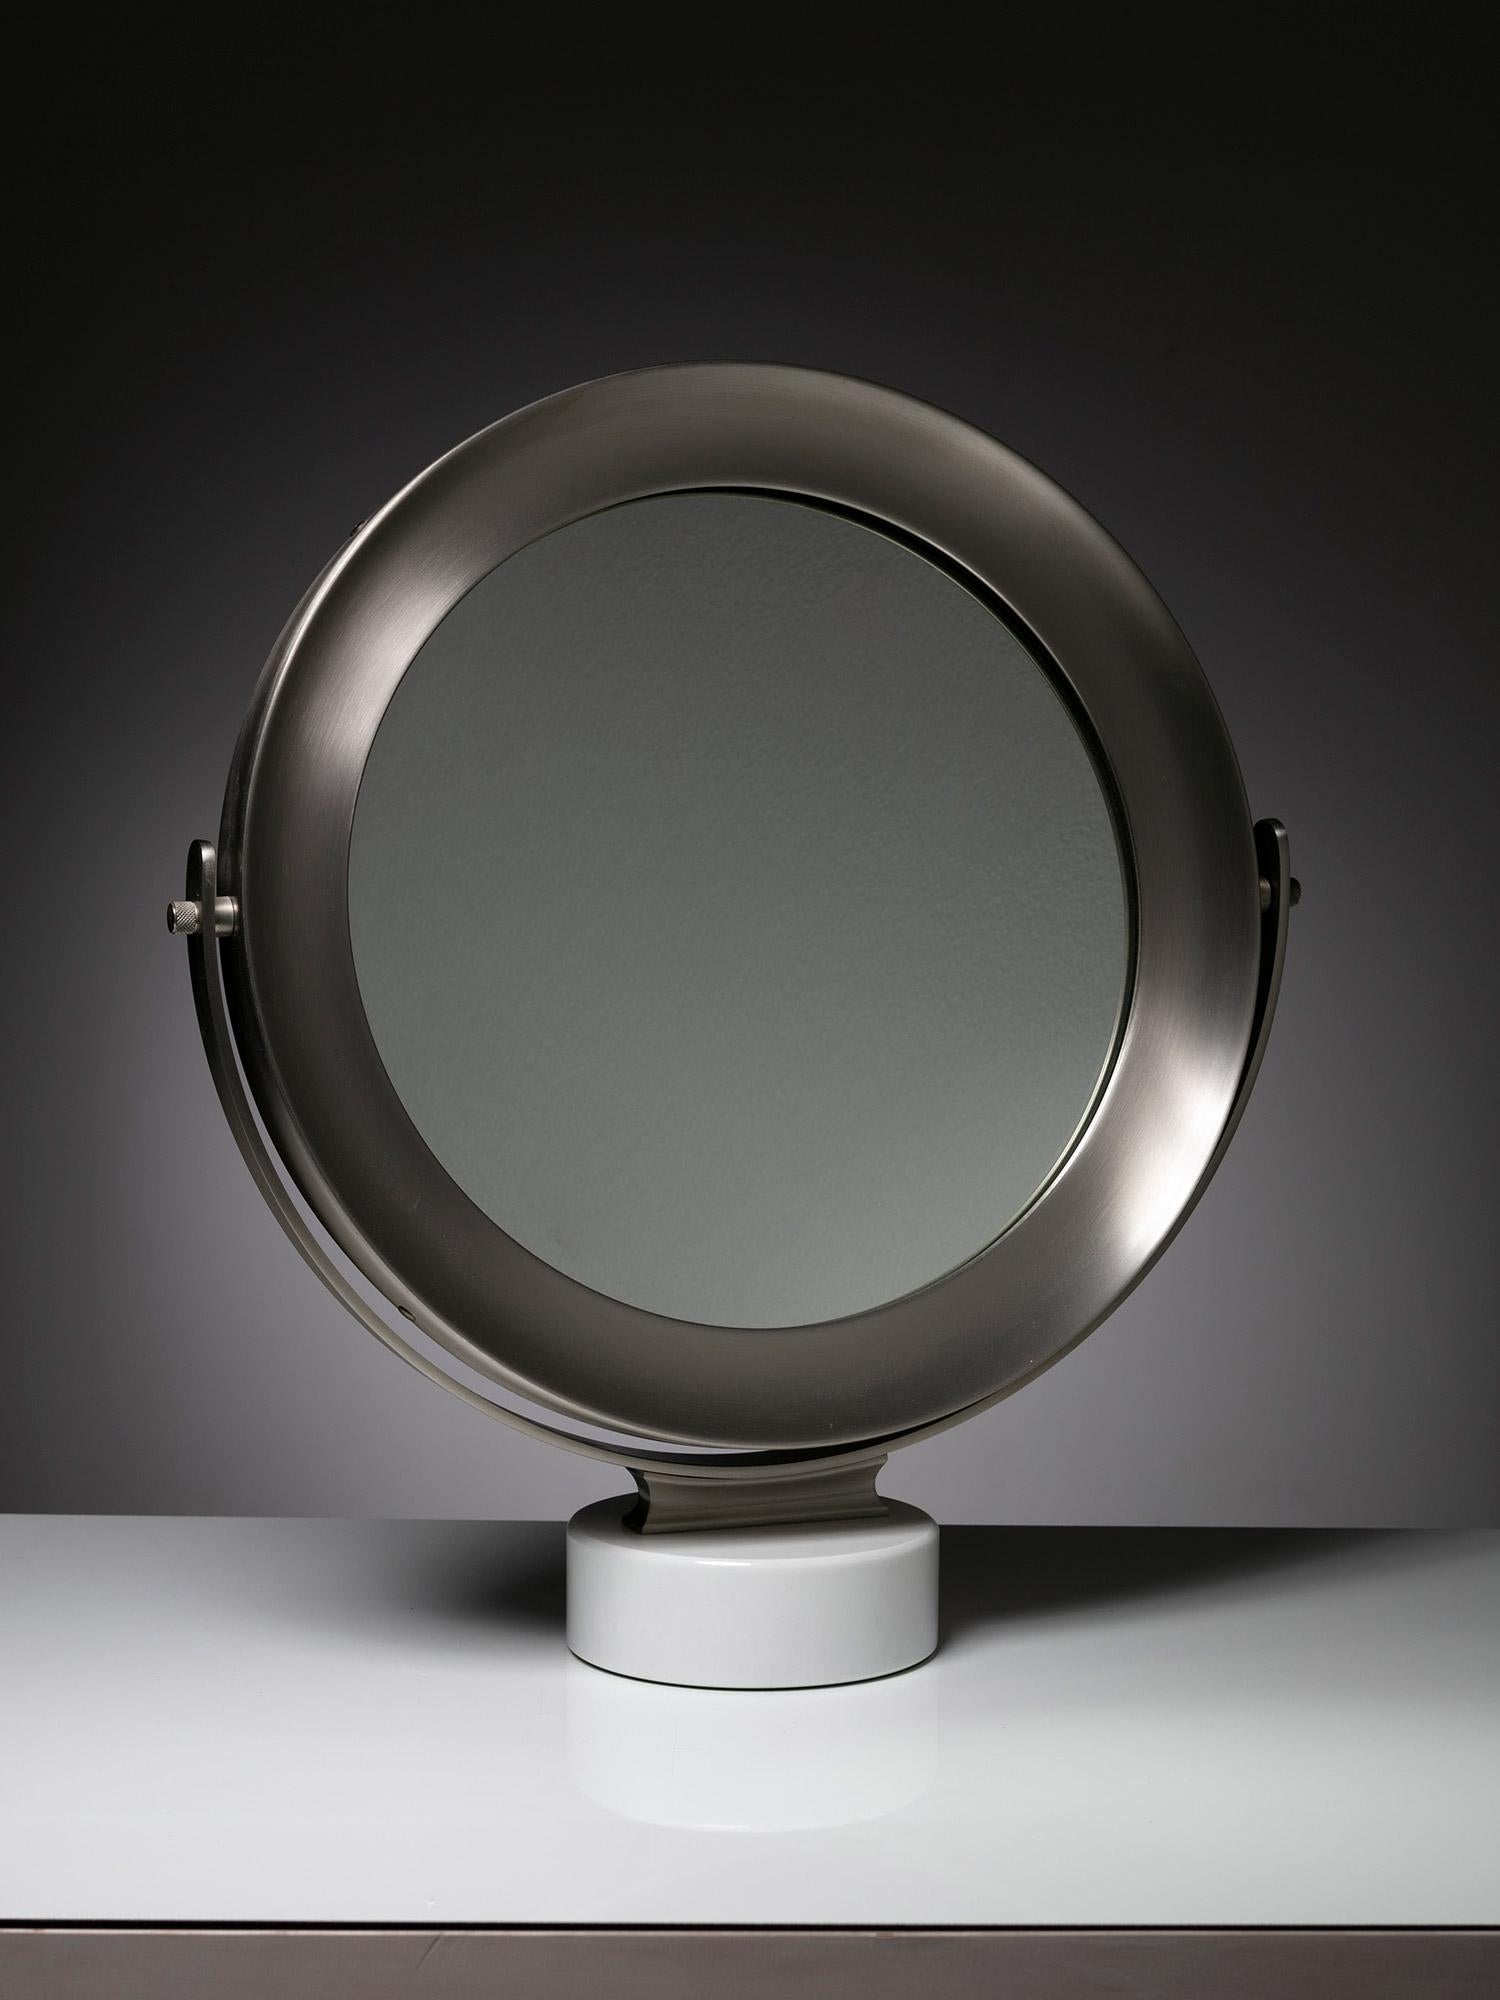 Miroir à poser Narciso de Sergio Mazza pour Artemide.
Base en marbre de Carrare et cadre métallique réglable.